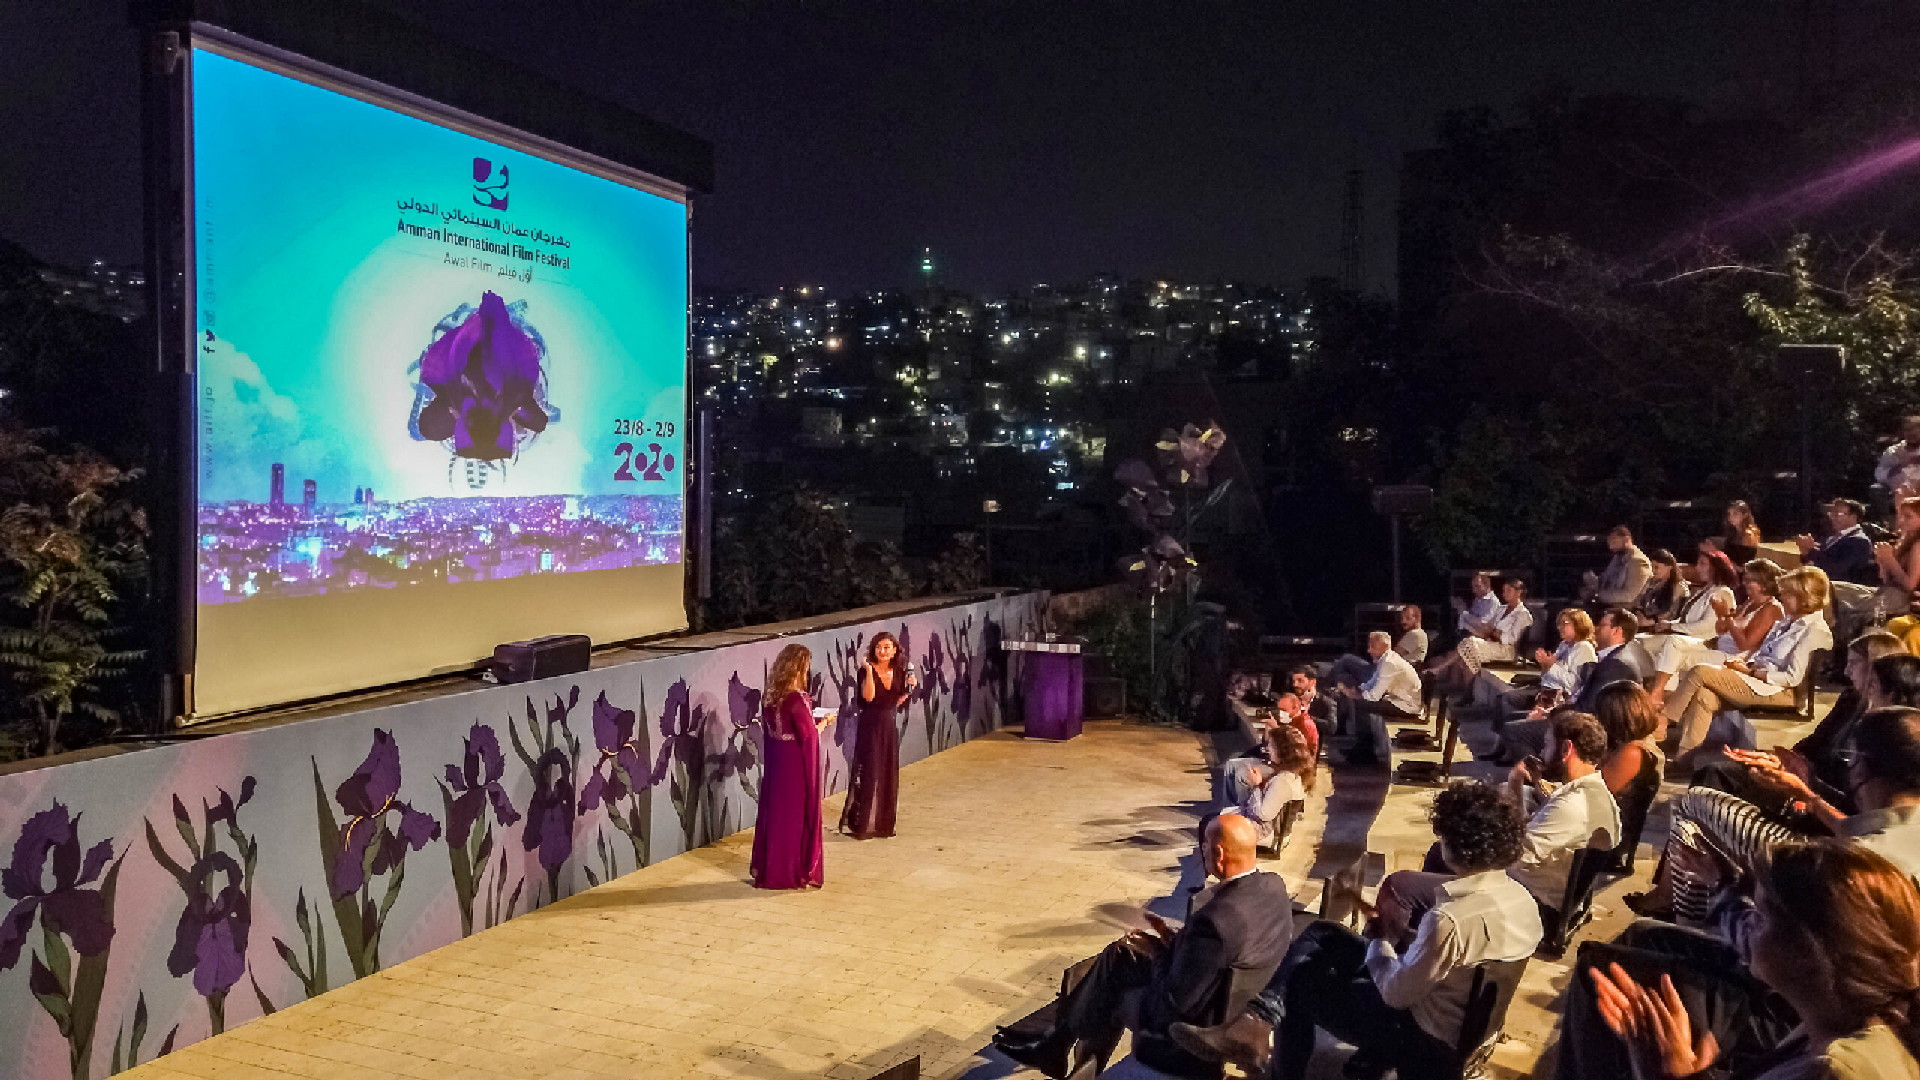 فيلم مغربي يفوز بجائزة أفضل فيلم عربي وثائقي طويل بمهرجان عمان الدولي